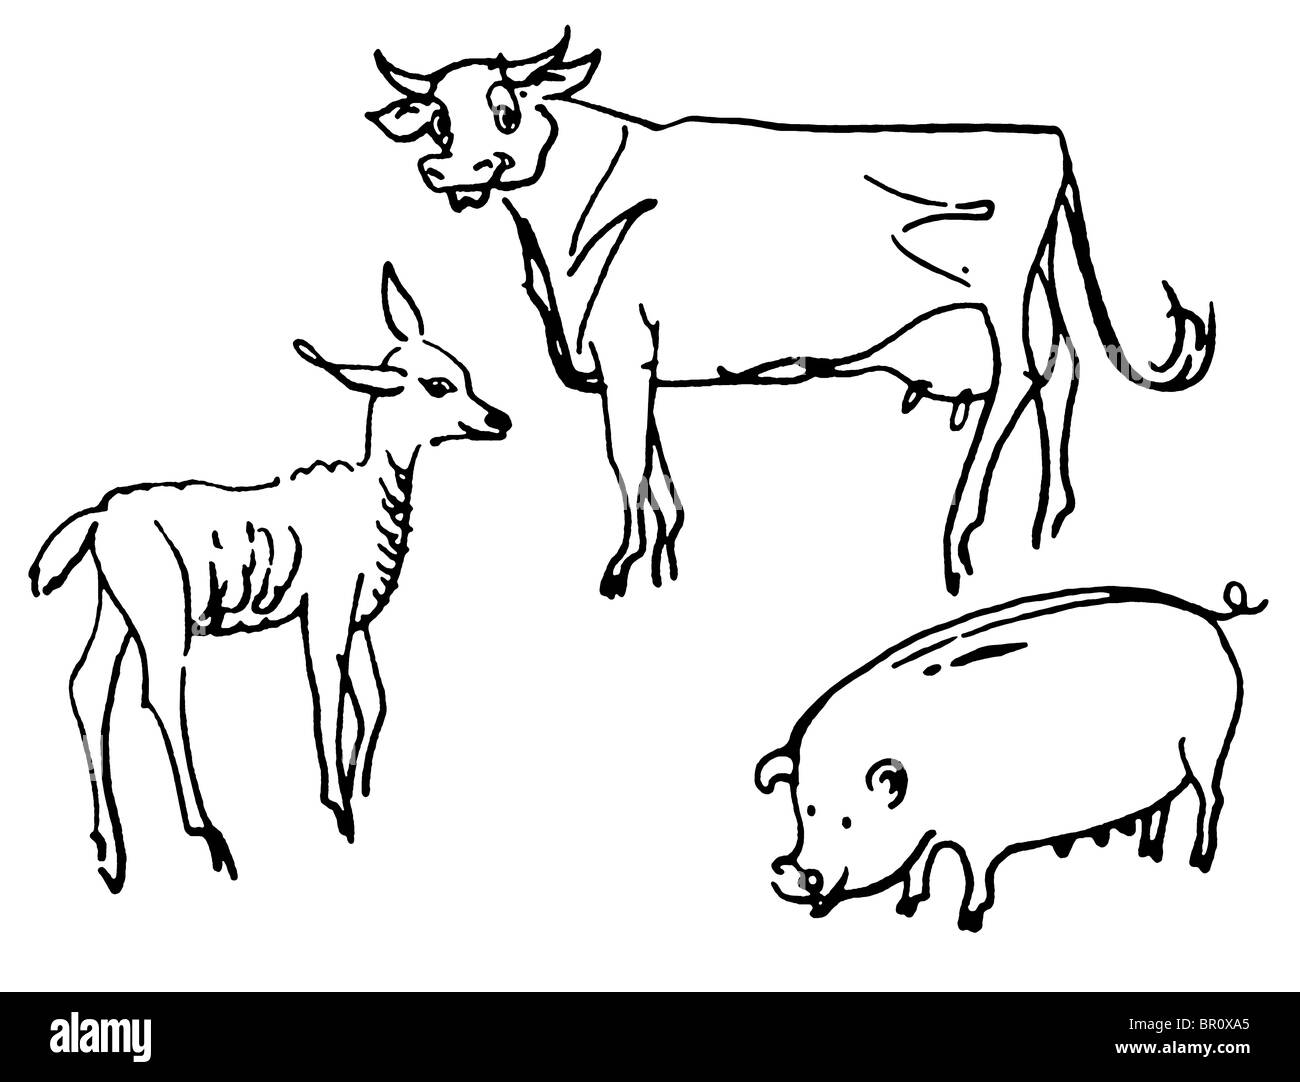 Une version noir et blanc d'une illustration d'une vache Banque D'Images